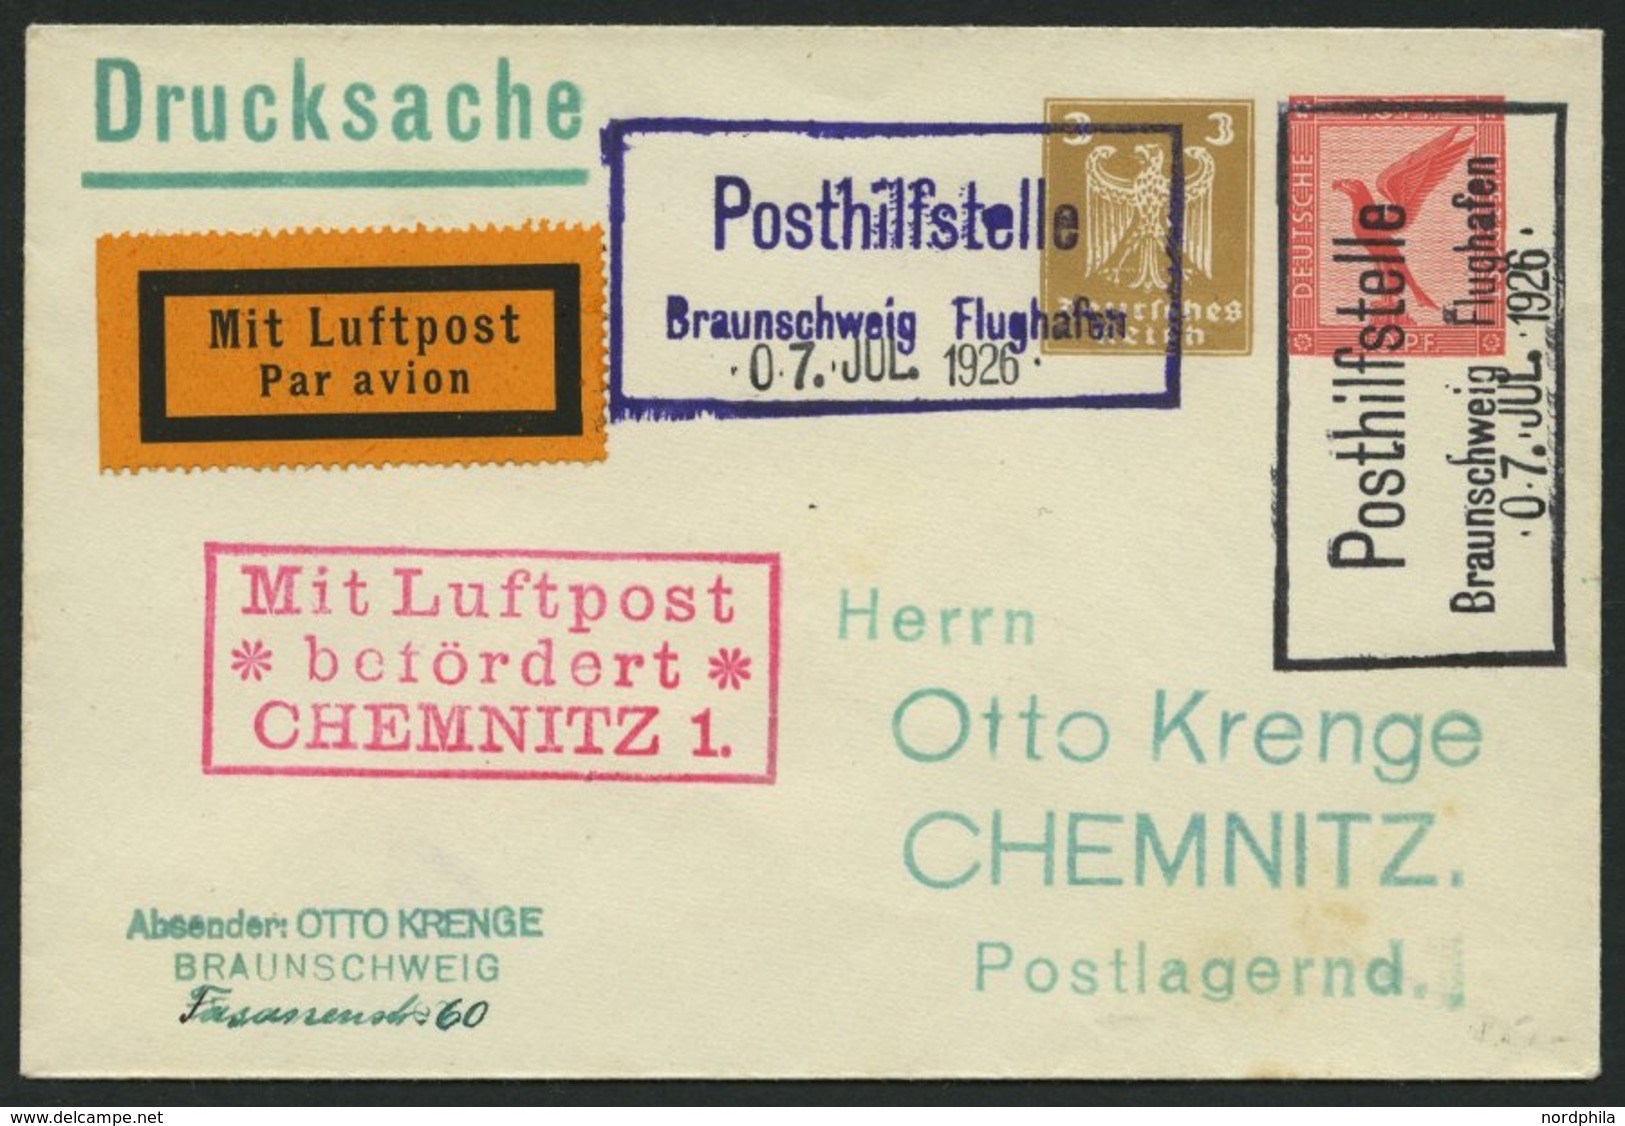 FLUGPLATZ, FLUGHAFENSTPL 7-01g BRIEF, Braunschweig Posthilfstelle Flughafen, 1926, Je R2 In Schwarz Und Violett, Datum-G - Airmail & Zeppelin